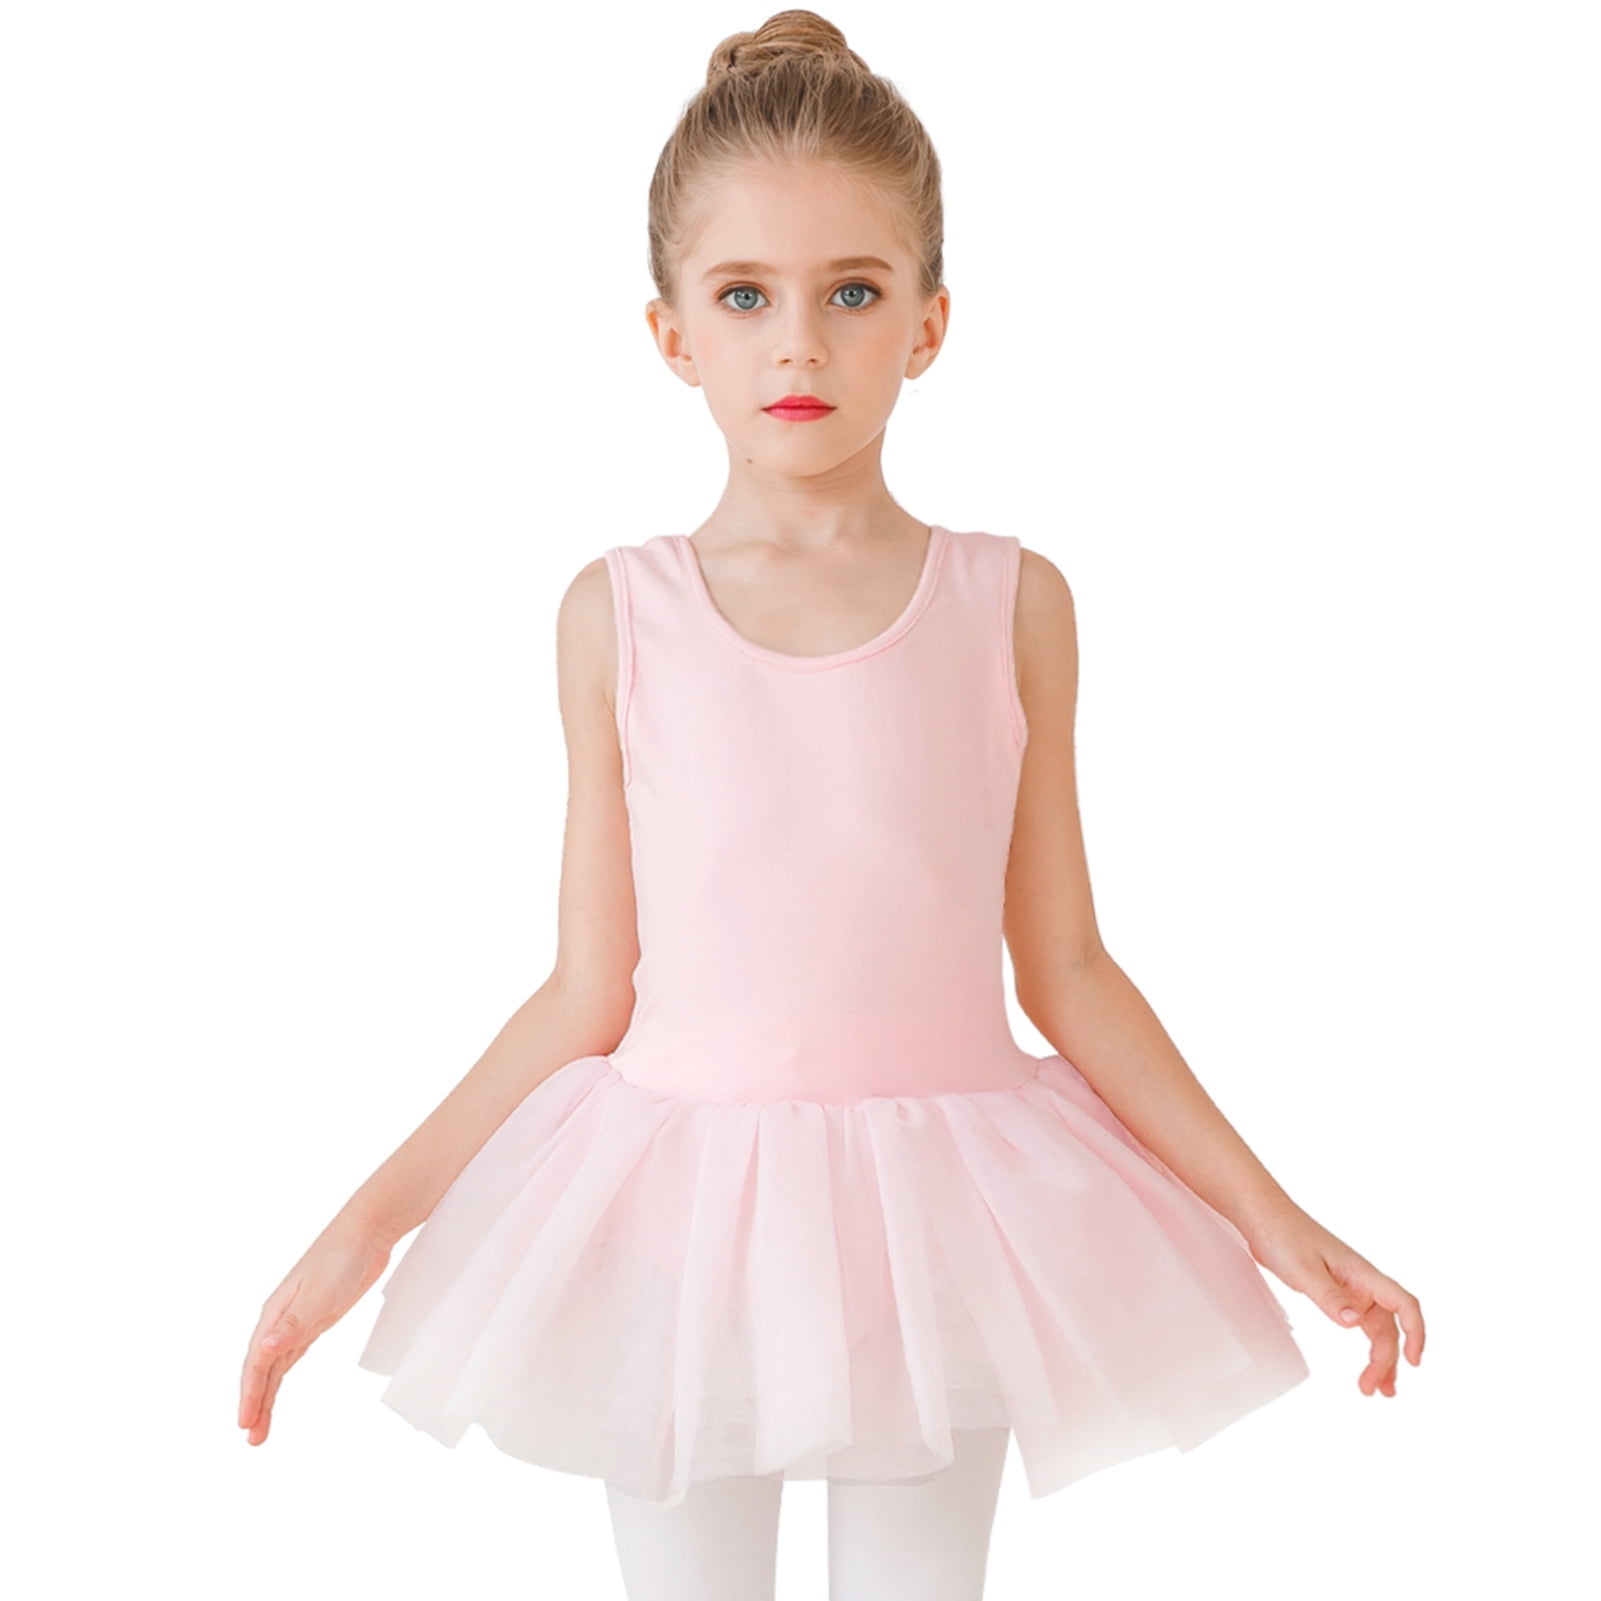 STELLE Sleeveless Ballet Leotard Tank Tutu Skirted Dance Dress Ballerina Outfit for Girls Ballet Pink 2 3T 6b5a7fc0 5cc6 4584 a287 04c2d6d1633e.c4b1348090484955ddf662ccedee9cc0